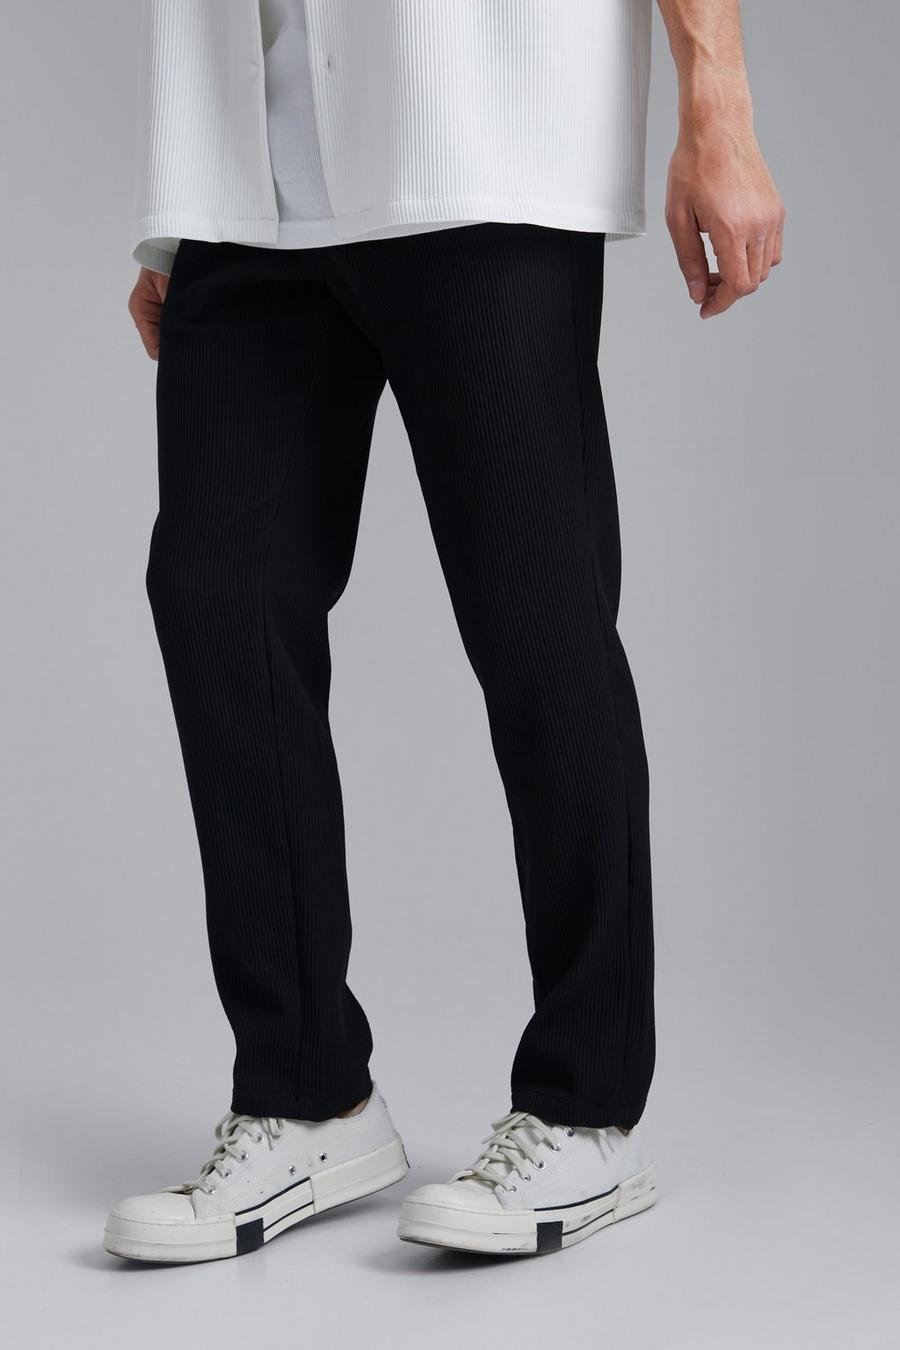 Pantaloni Slim Fit con pieghe, Black negro